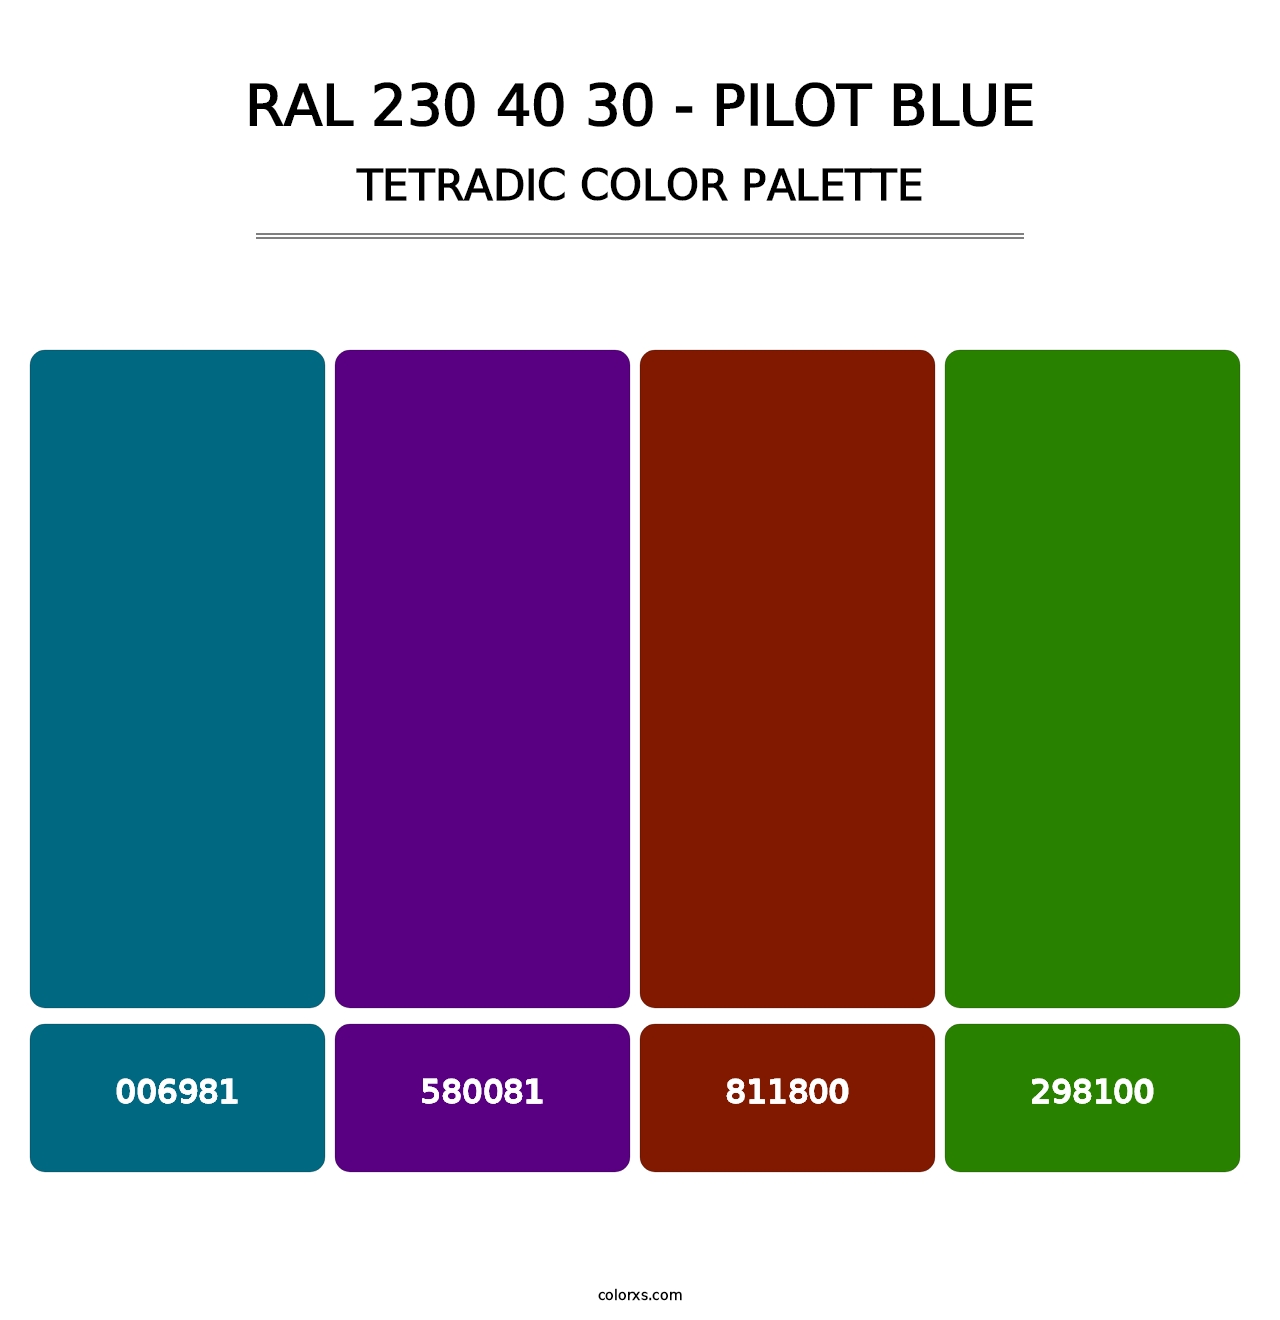 RAL 230 40 30 - Pilot Blue - Tetradic Color Palette